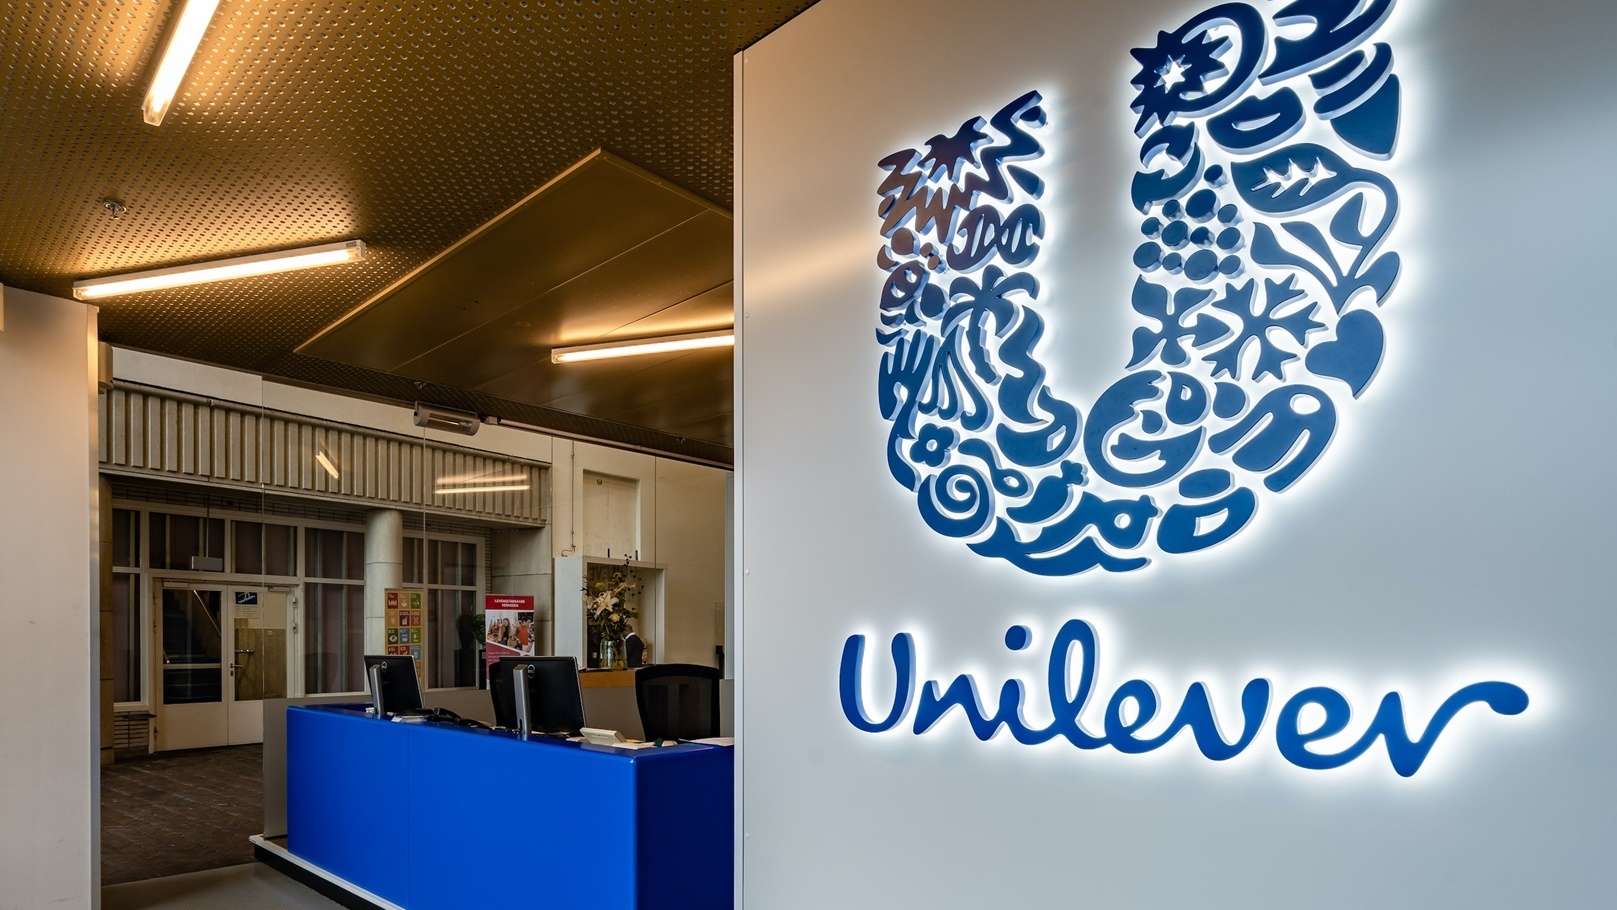 Unilever_Officer_Rotterdam